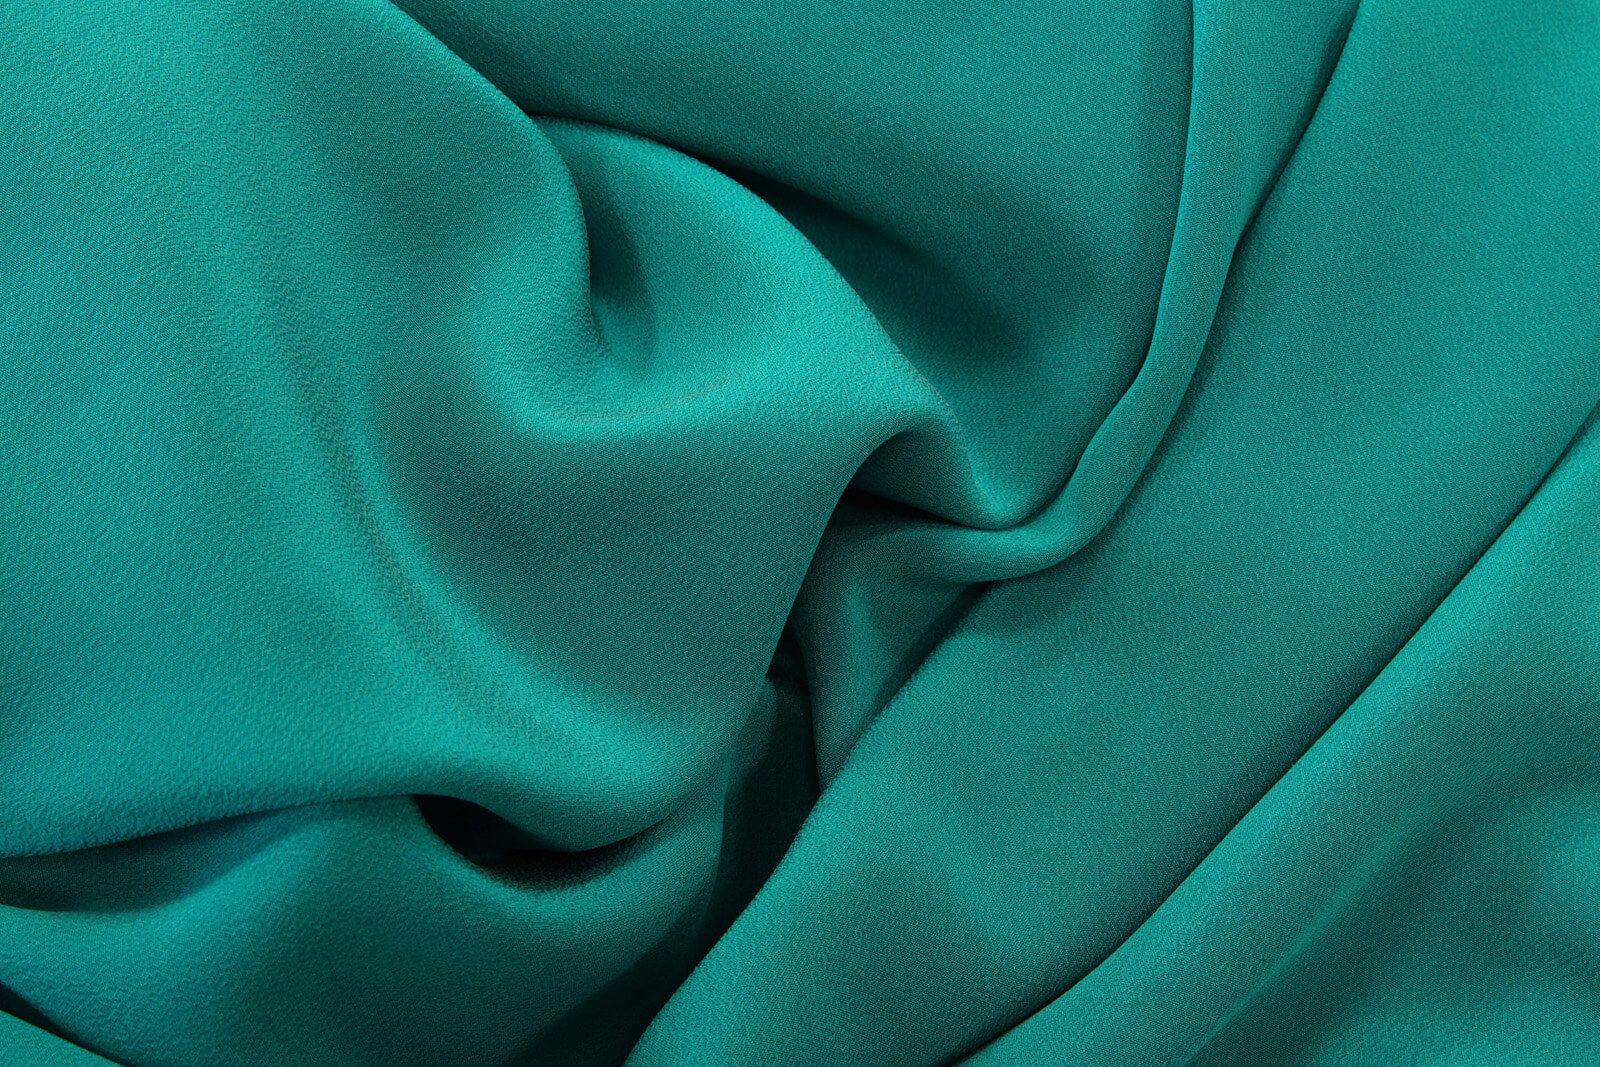 Шелковый крепдешин Alexander McQueen, цвет Зеленый, фото 1